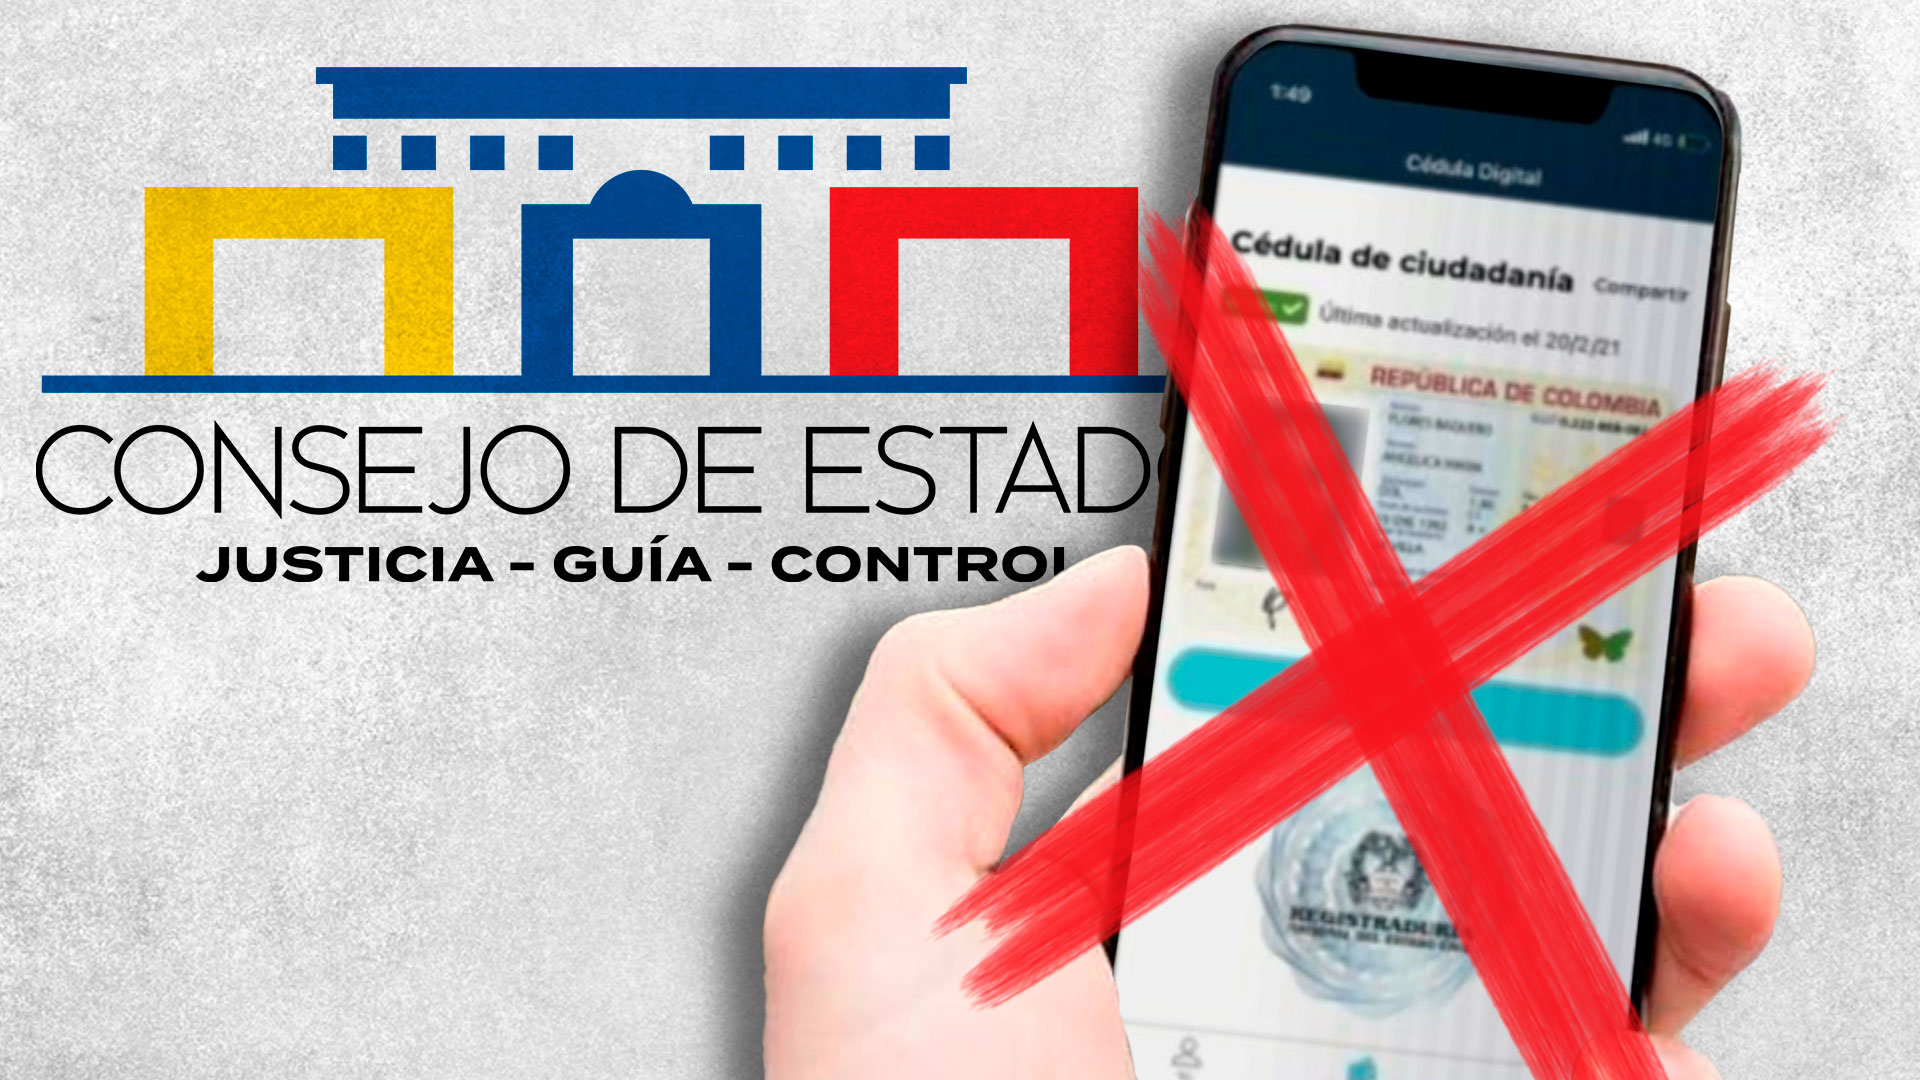 Por qué querían tumbar la cédula digital en Colombia: Consejo de Estado negó demanda que pretendía anularla